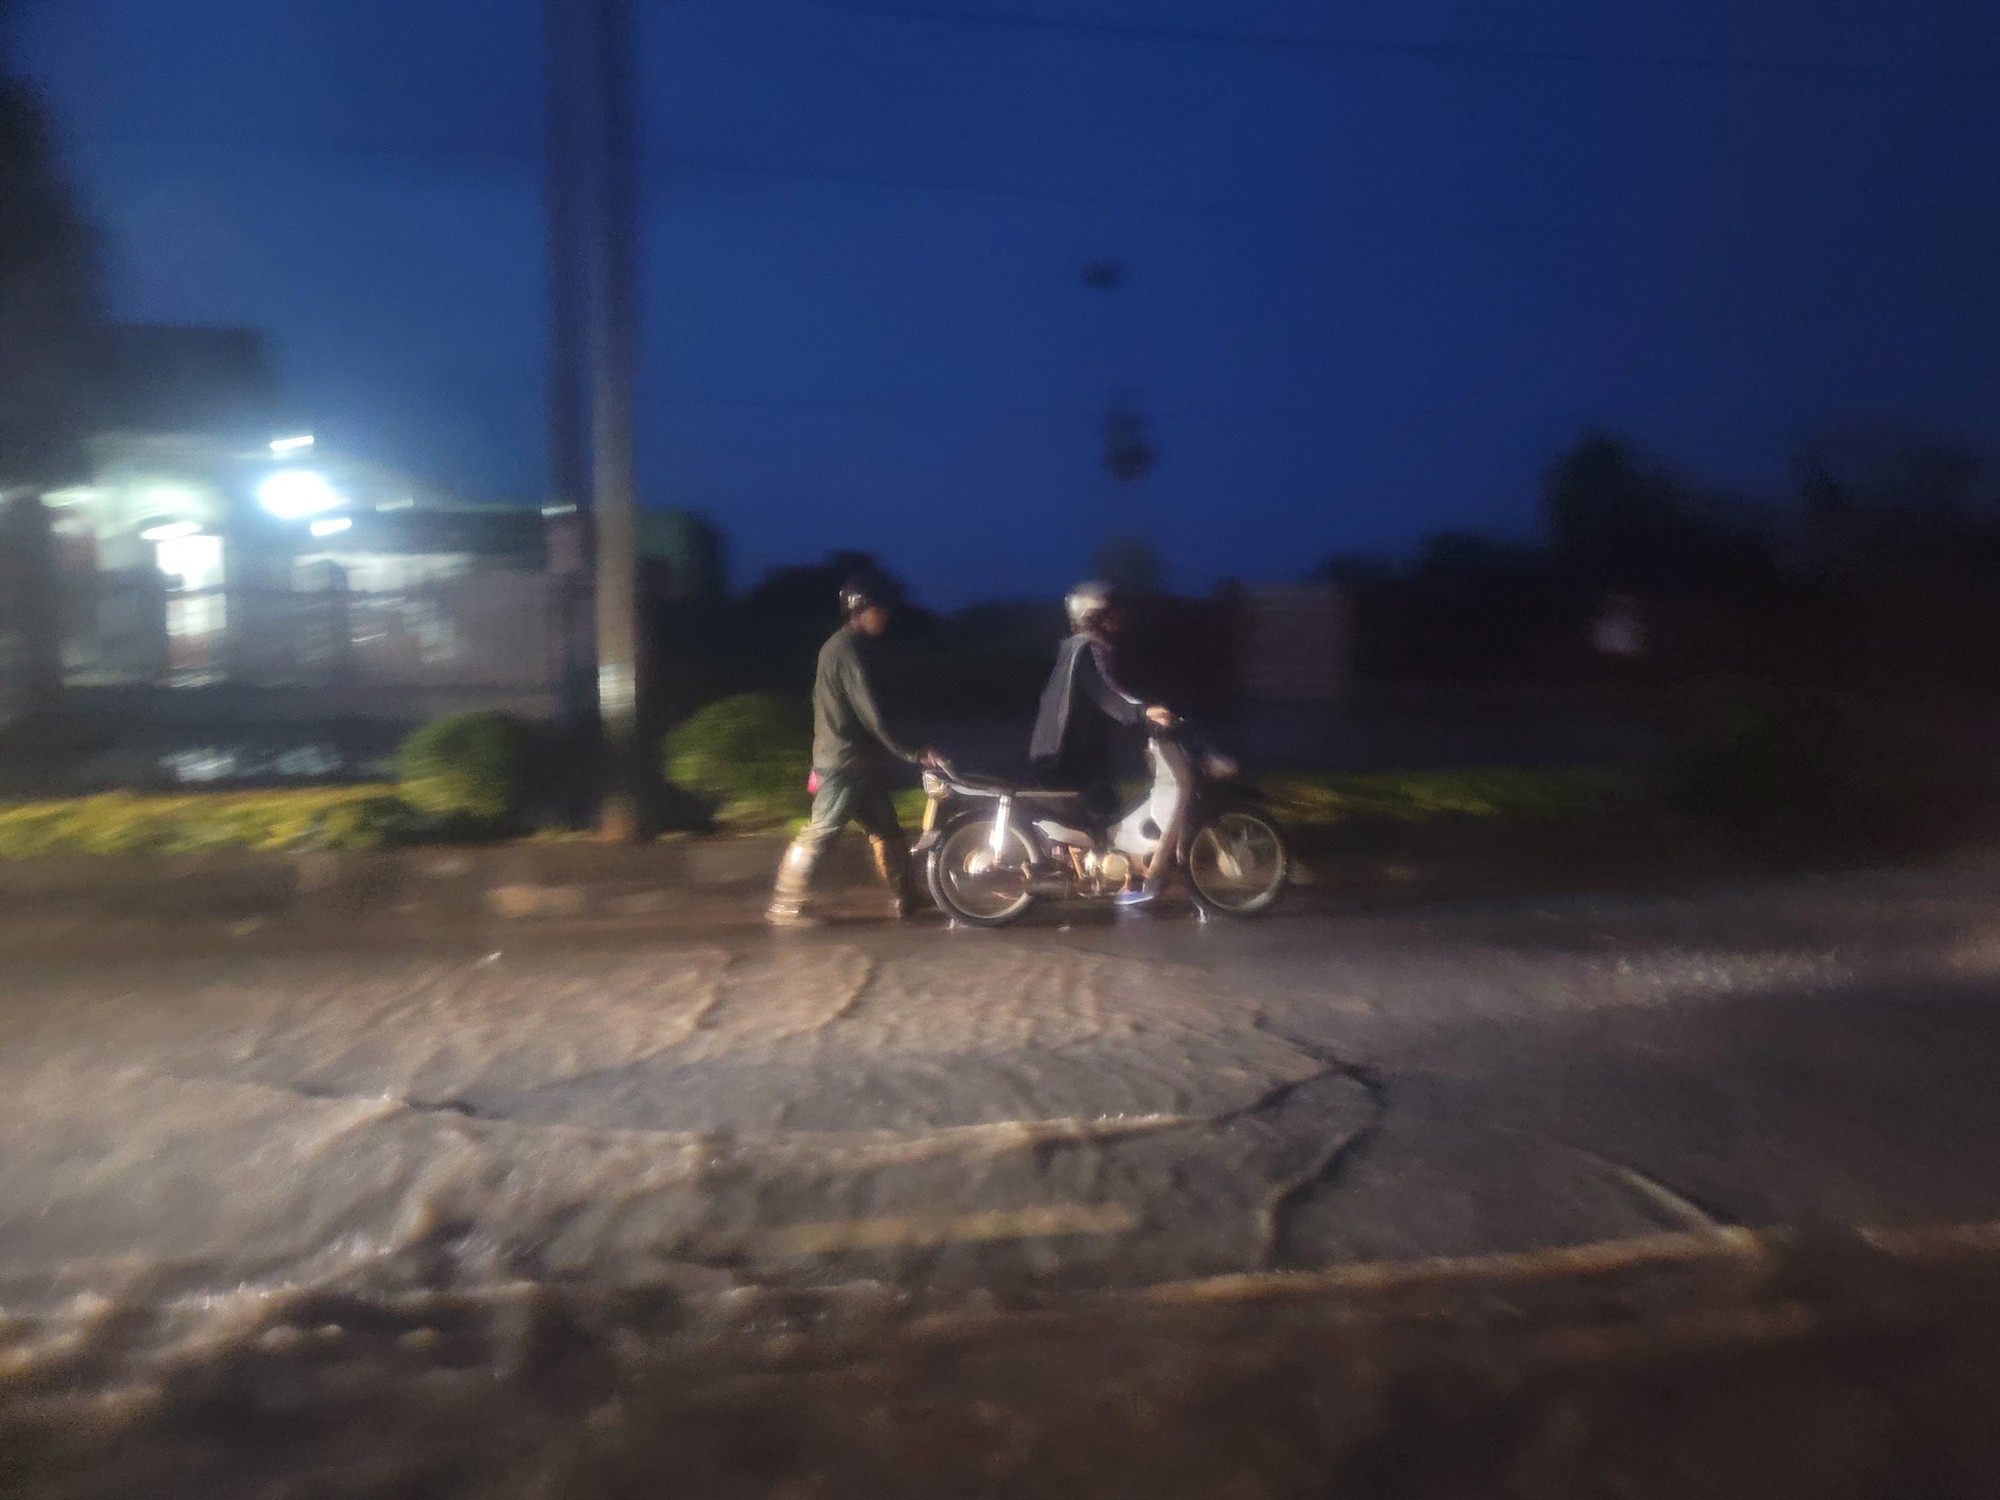 Quốc lộ 14 qua Kon Tum ngập sâu do mưa lớn, phương tiện lưu thông khó khăn - Ảnh 3.